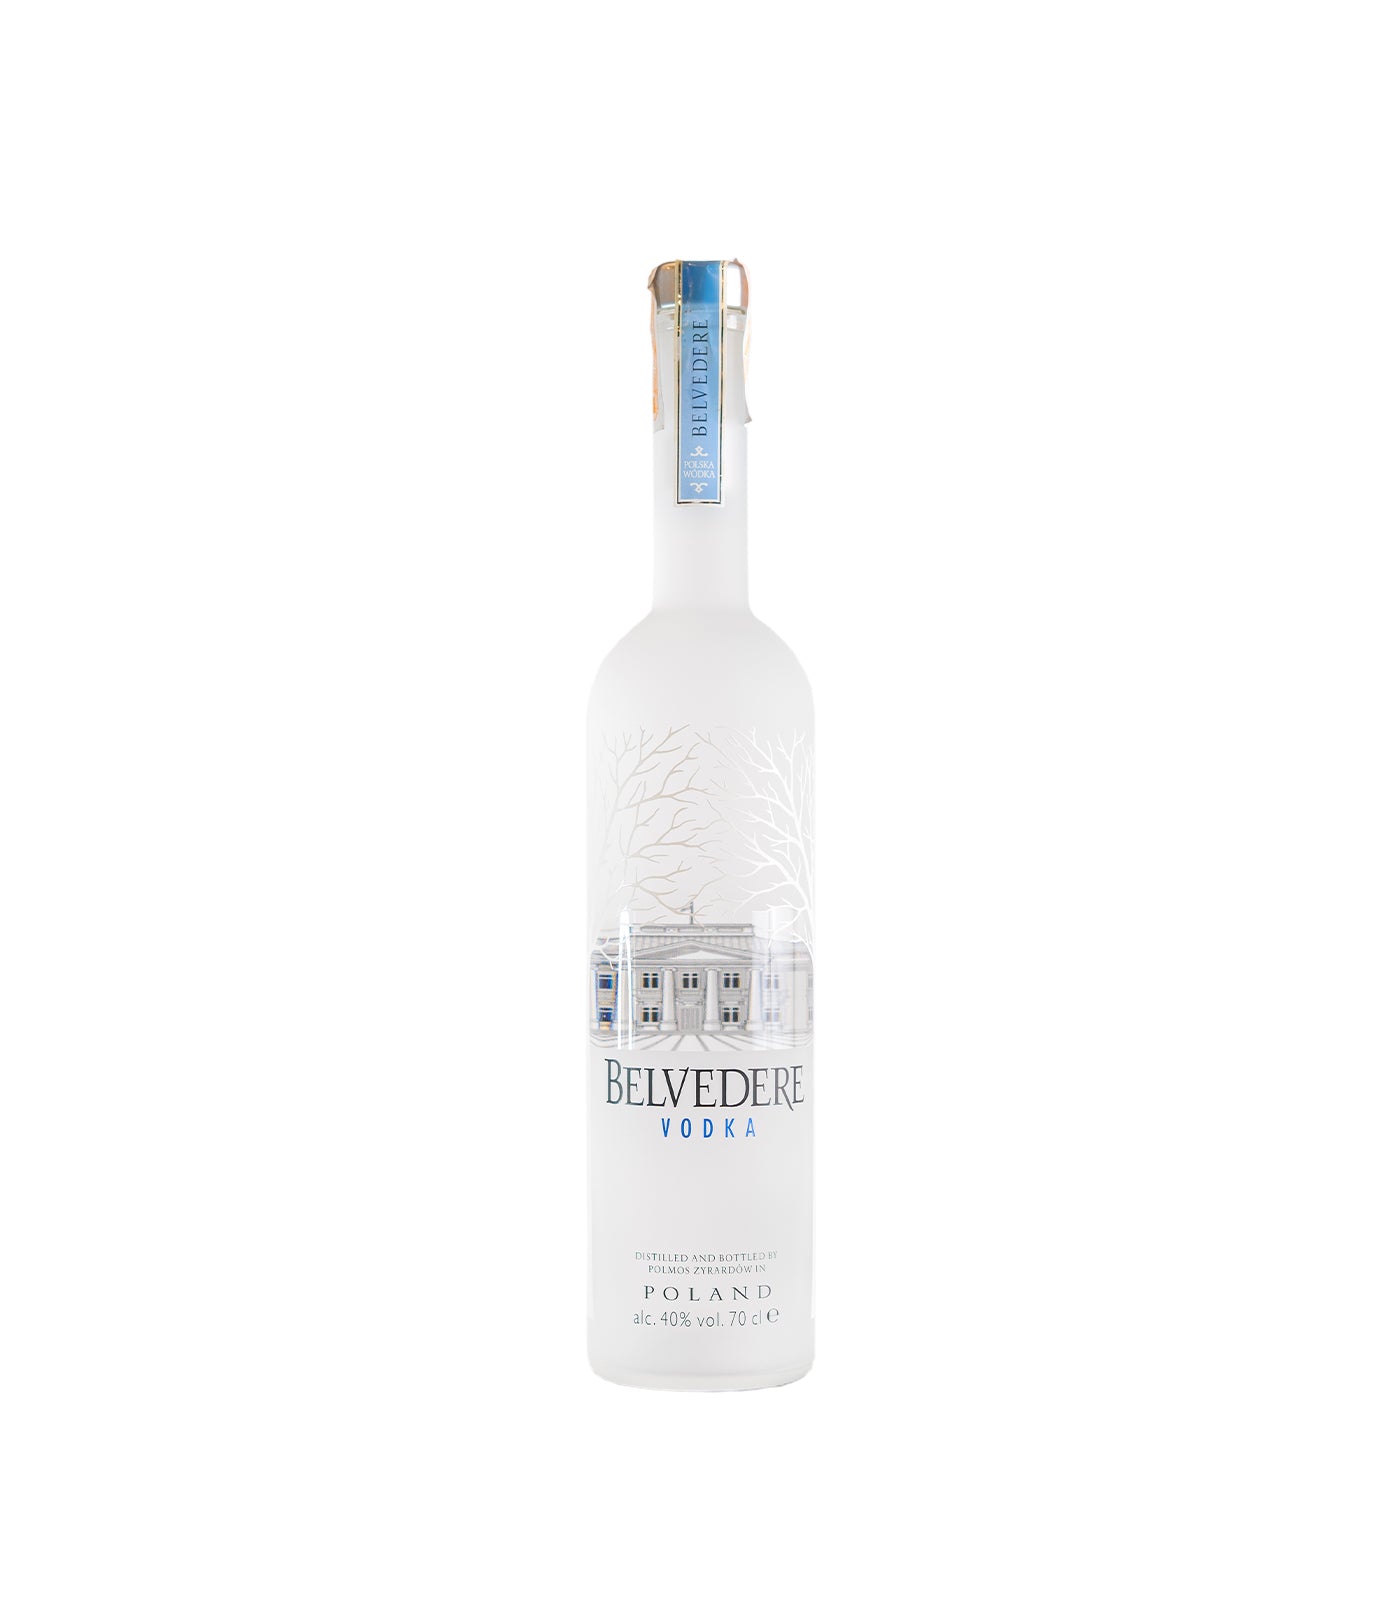 Liquor 700ml Lib Vodka Belvedere – Philippines Pure